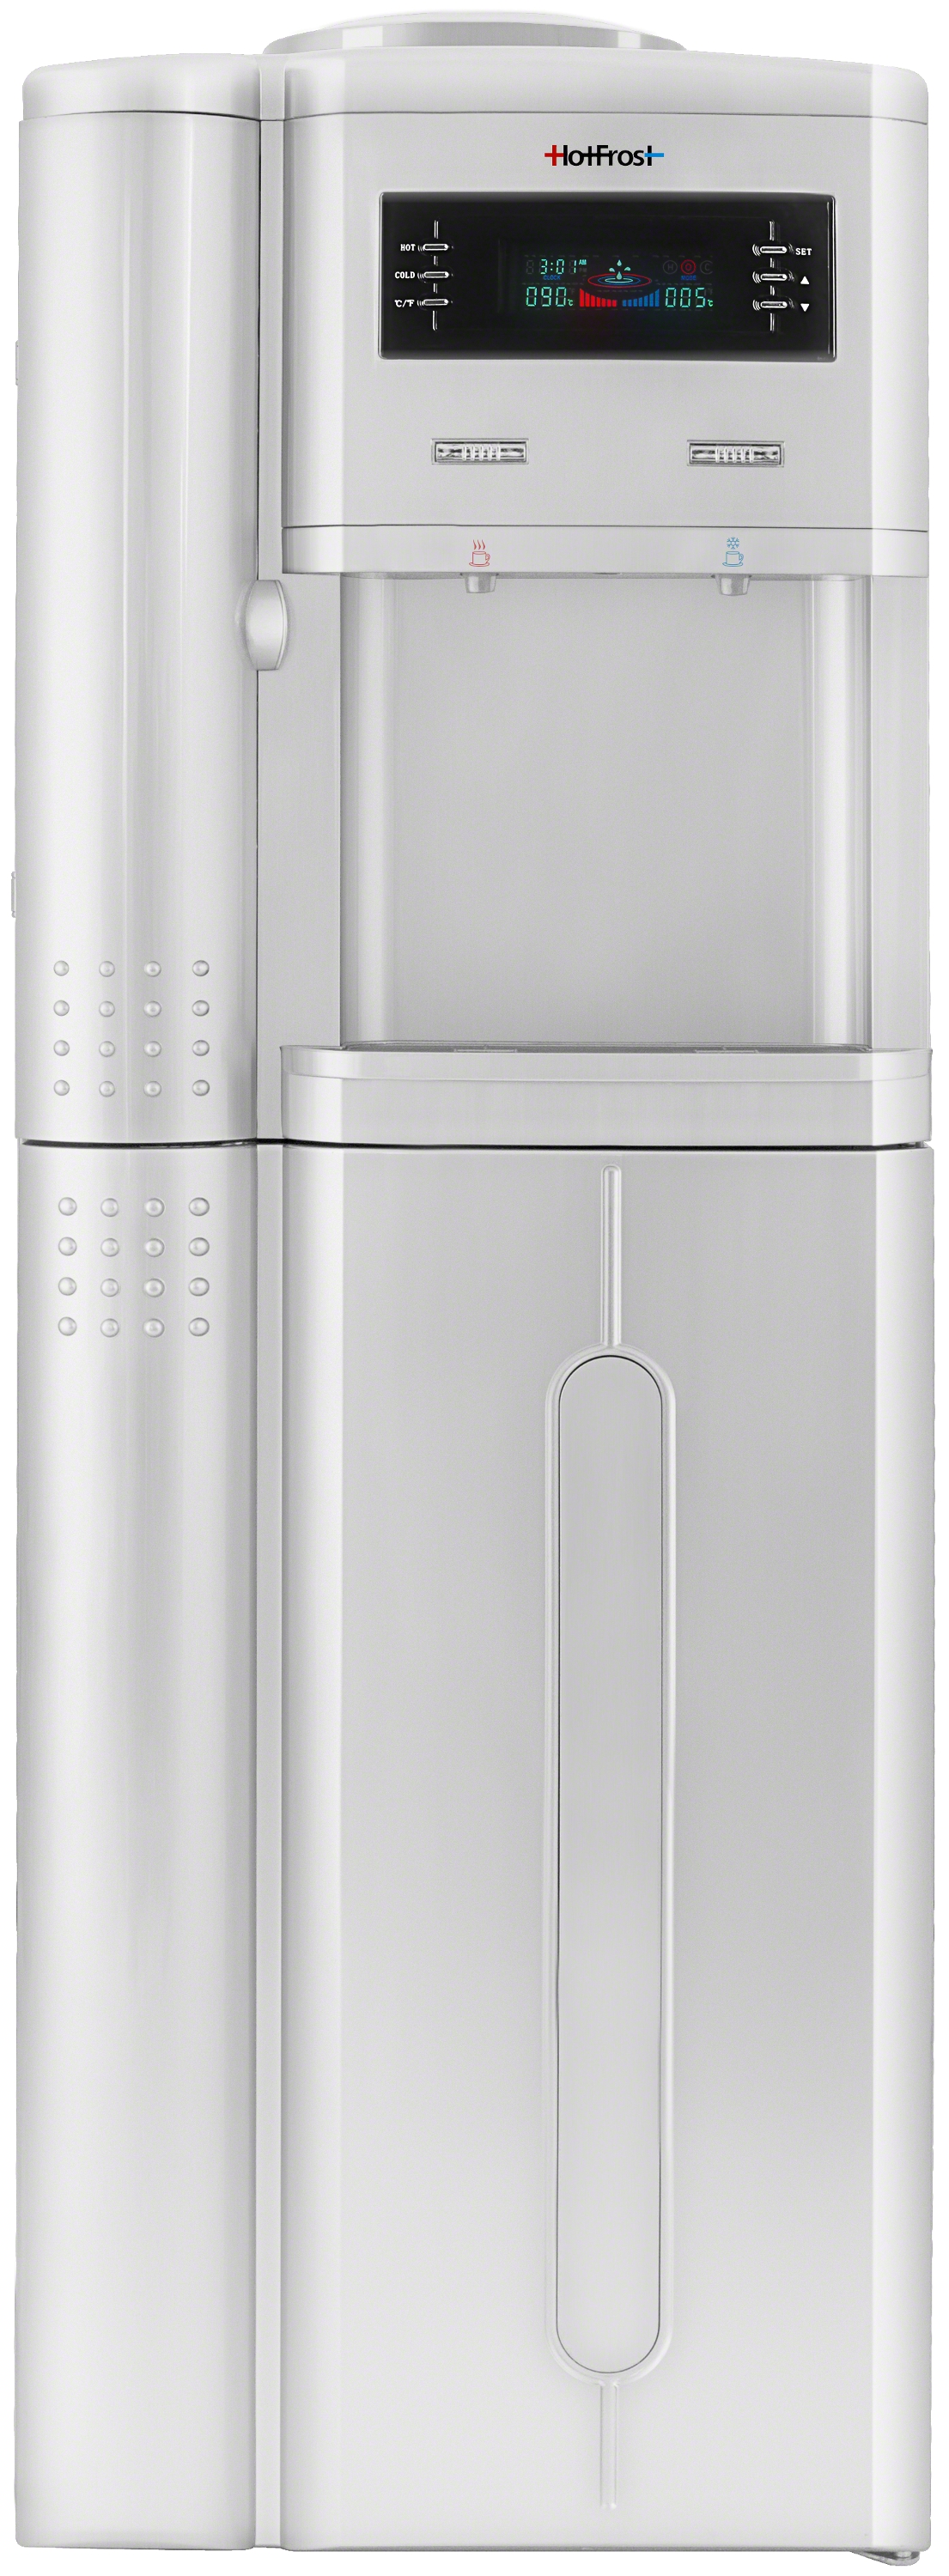 Кулер для воды с большим холодильником HotFrost V205BST